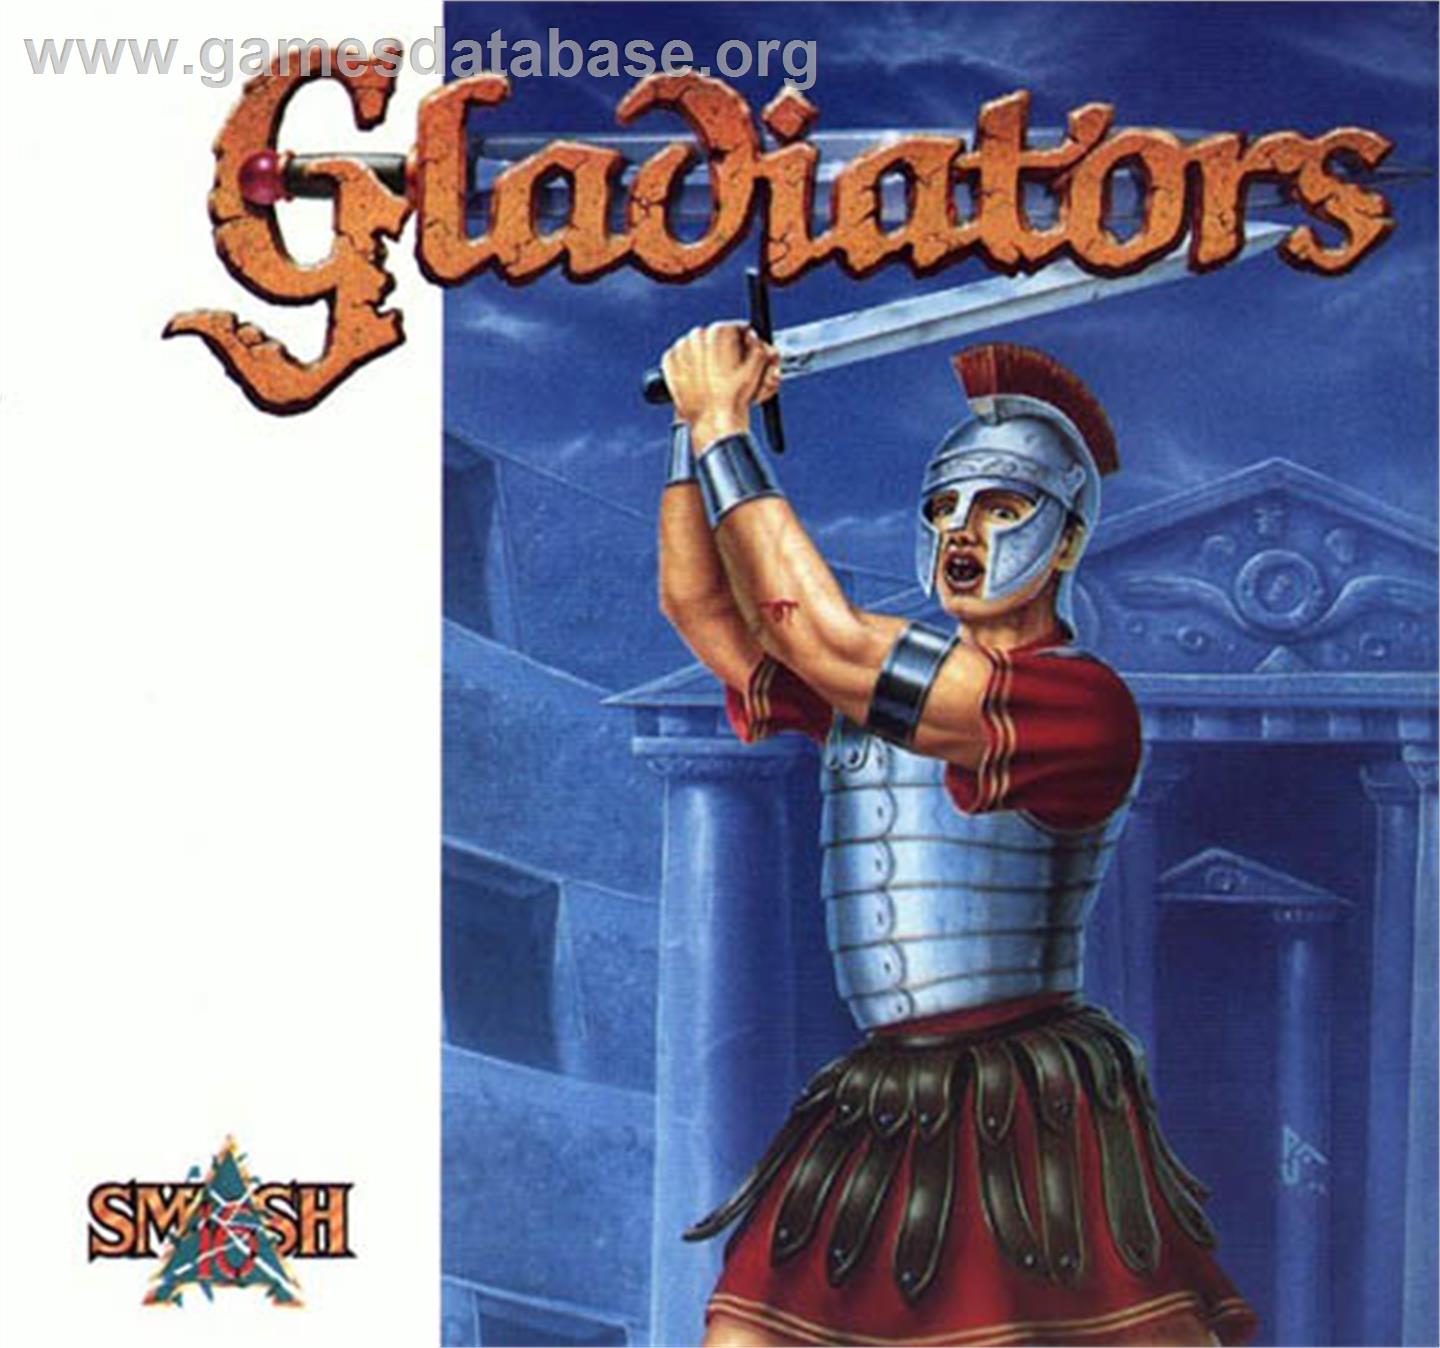 American Gladiators - Atari ST - Artwork - Box